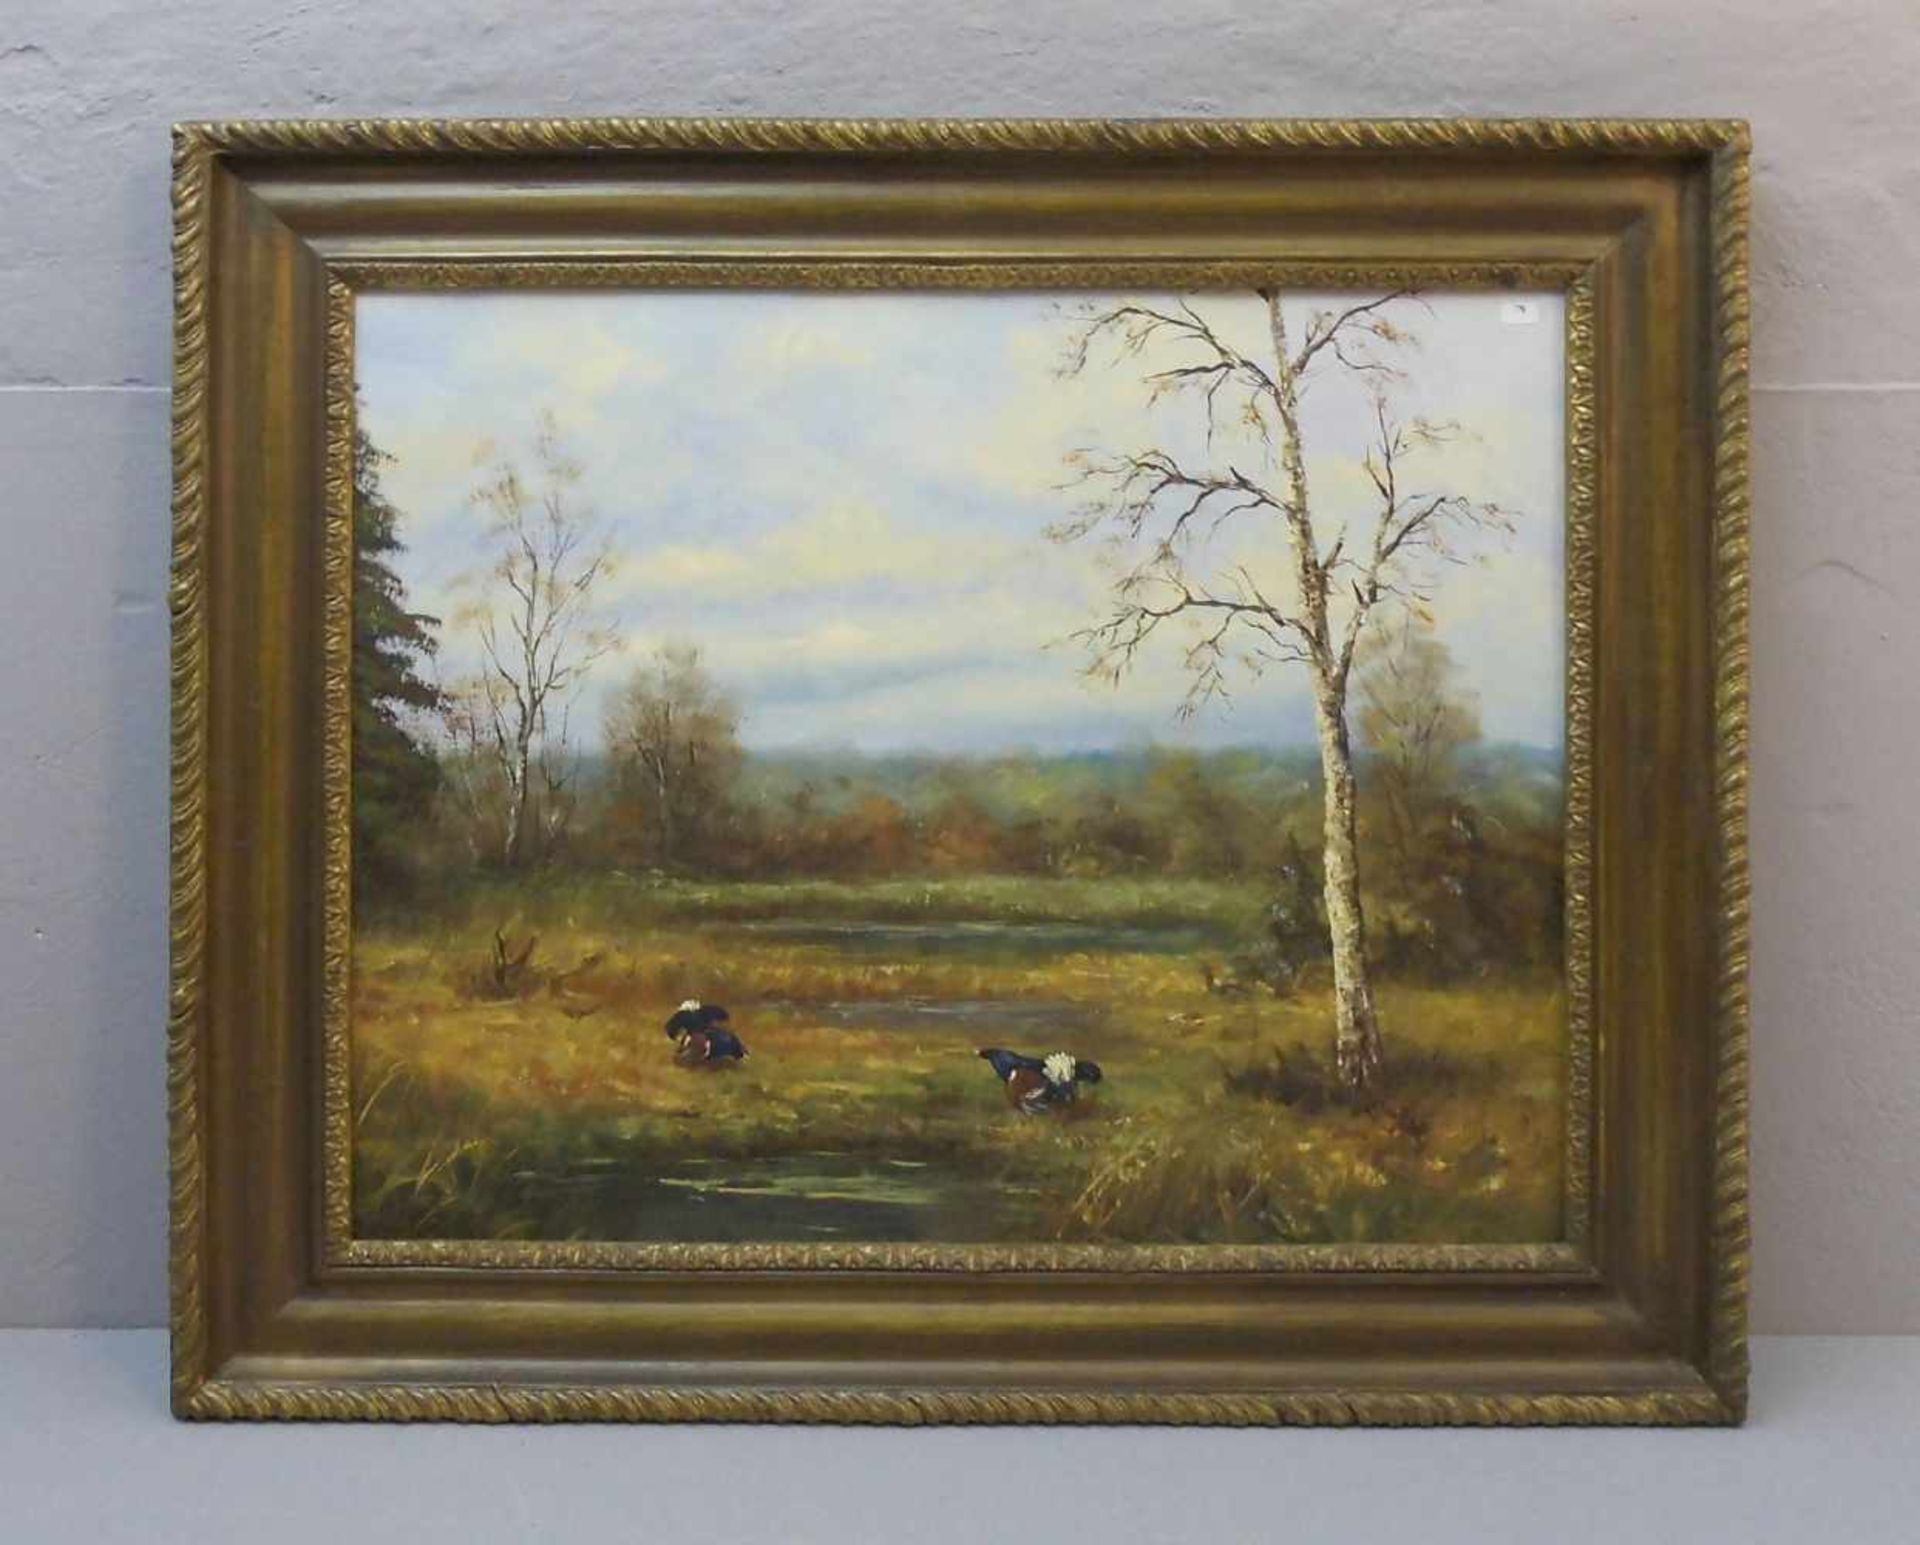 KUCZMANN, JOSEF (geb. 1929 in Oberschlesien), Gemälde / painting: "Landschaft mit Auerhähnen", Öl